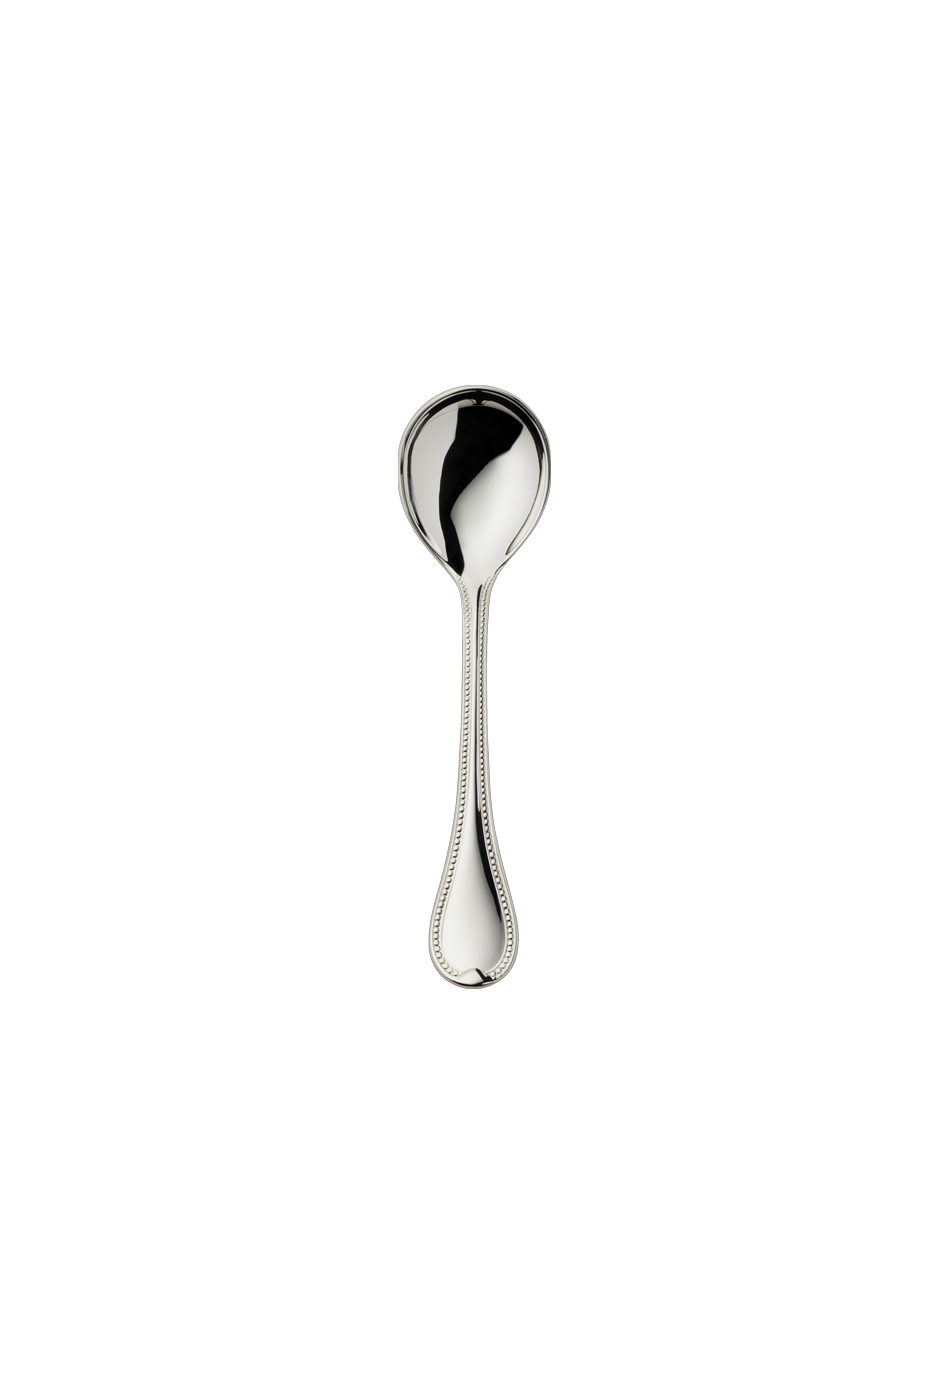 Franz. Perl Sugar Spoon (150g massive silverplated)